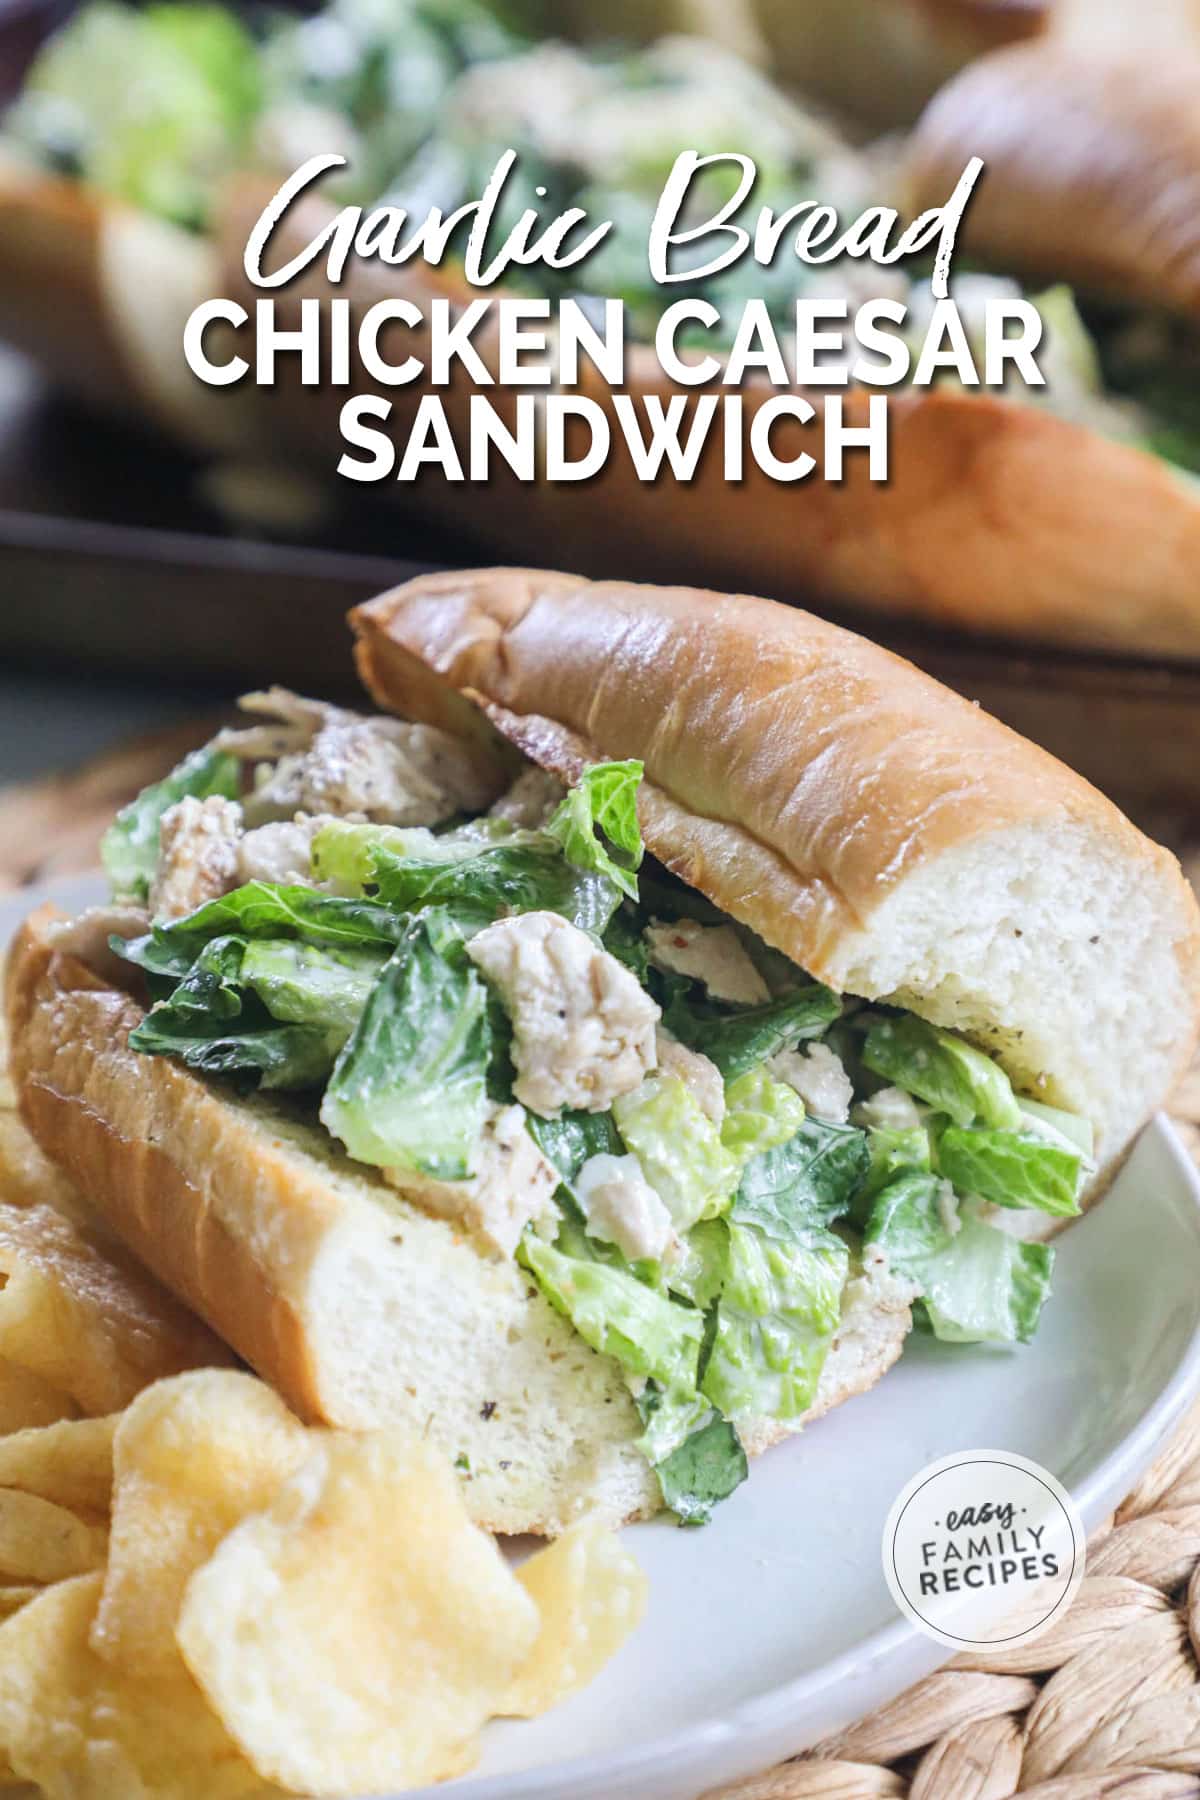 Chicken Caesar Sandwich on Garlic Bread served with chips